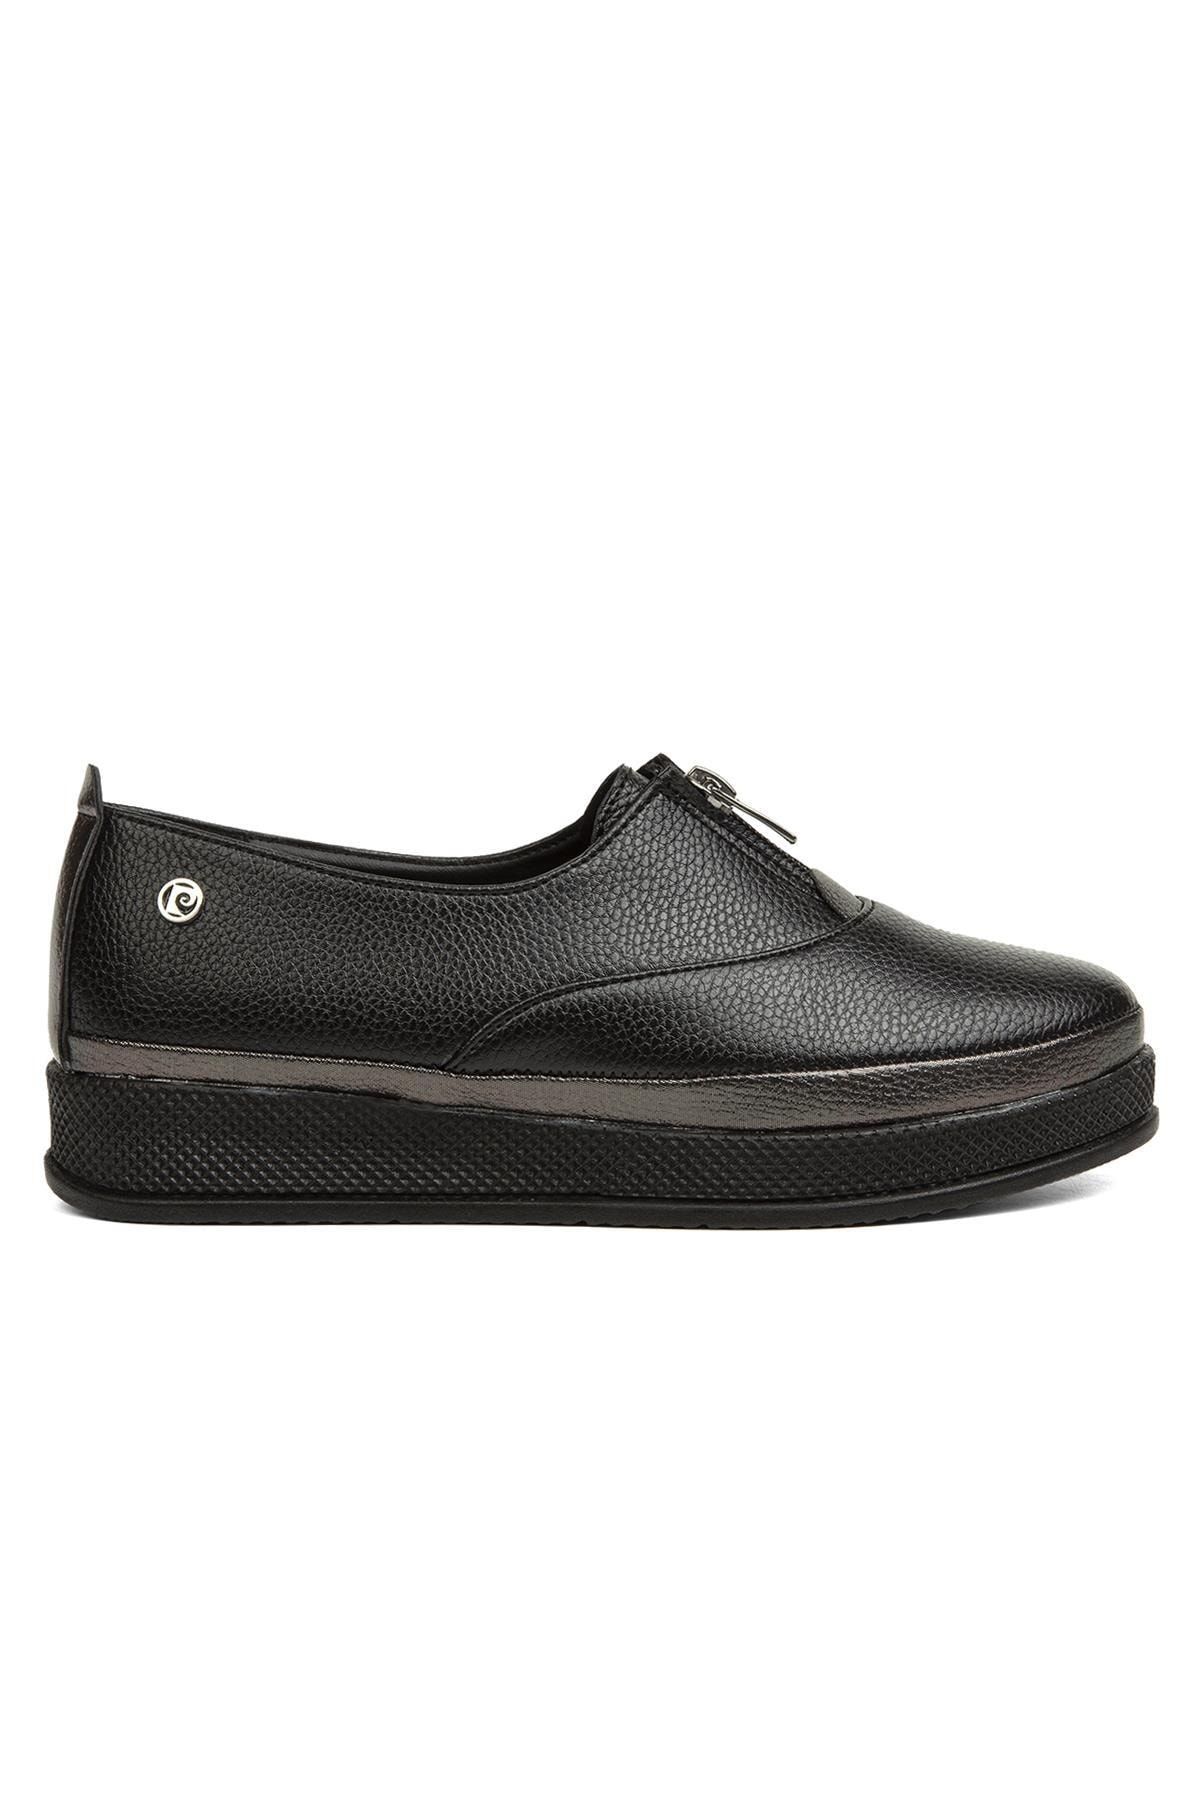 Pierre Cardin ® | Pc-51921-3530 Siyah - Kadın Günlük Ayakkabı